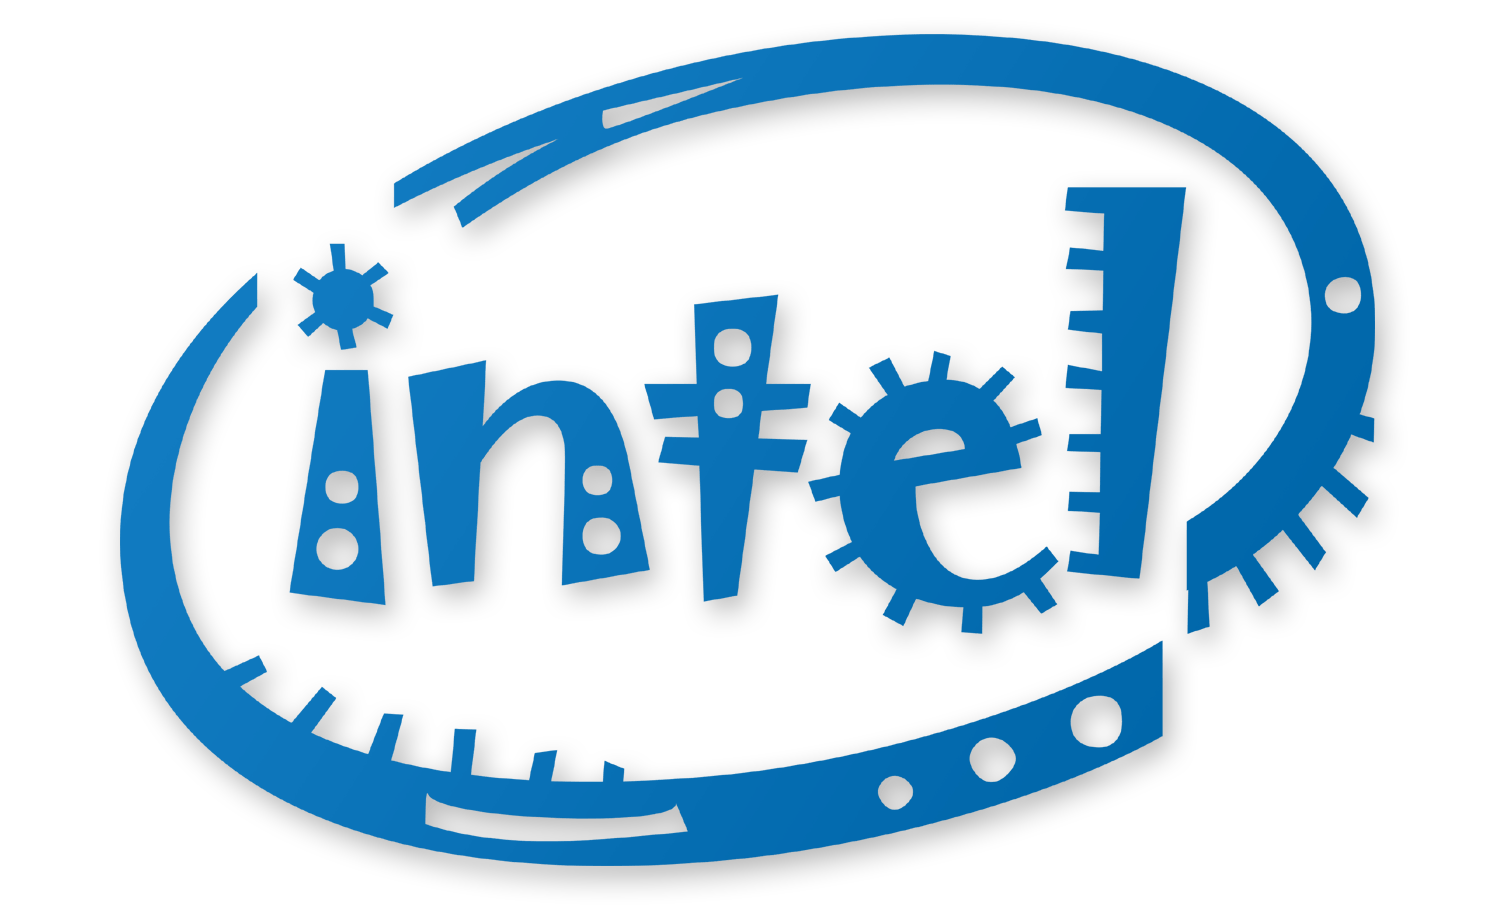 Old Intel Logo - Intel Png Logo - Free Transparent PNG Logos